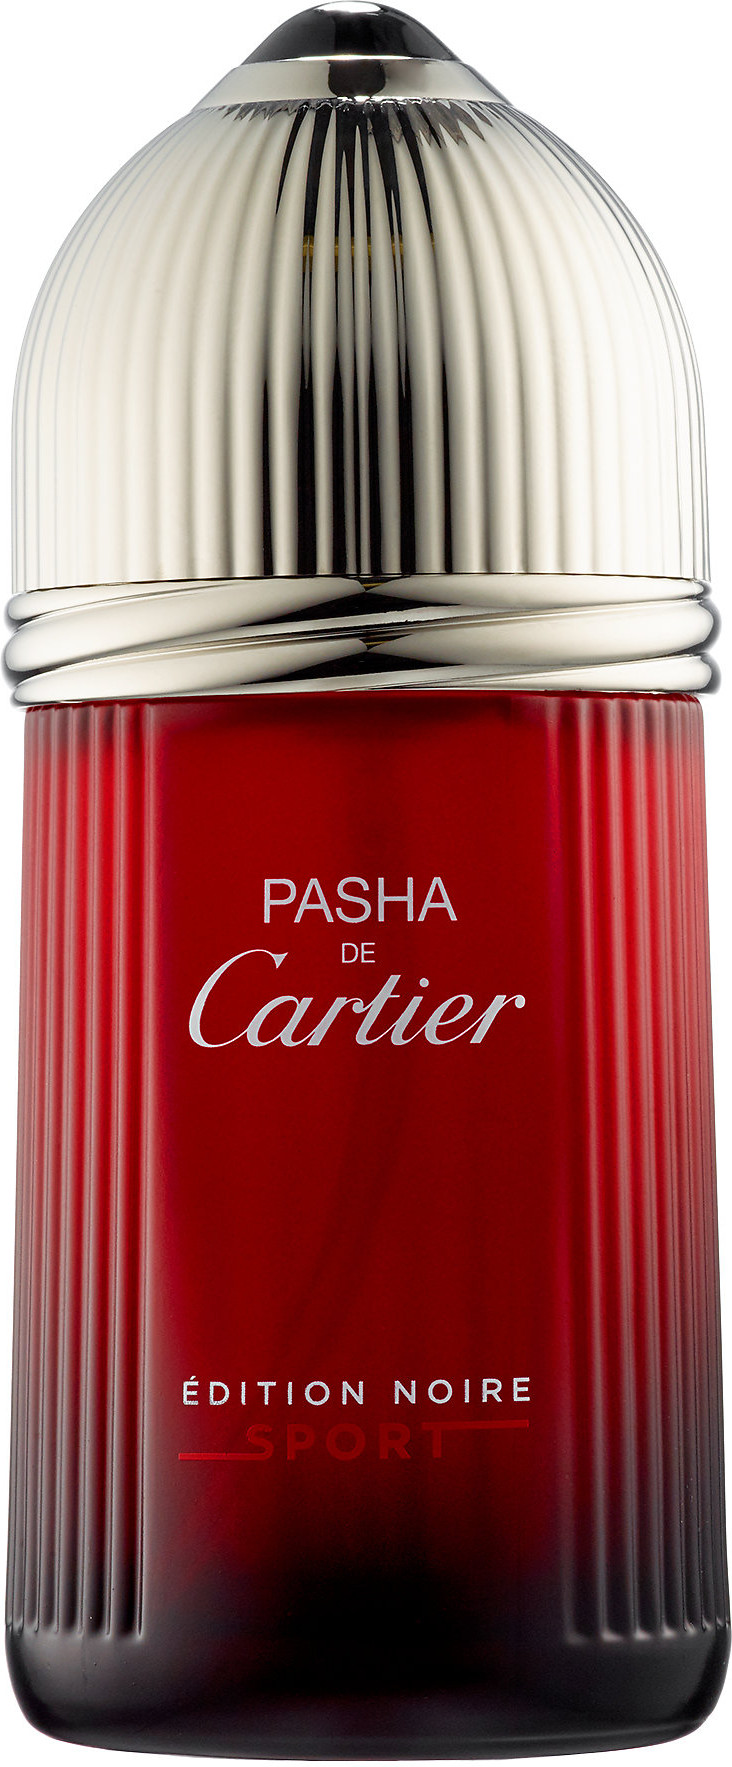 Купить духи Cartier Pasha de Cartier 